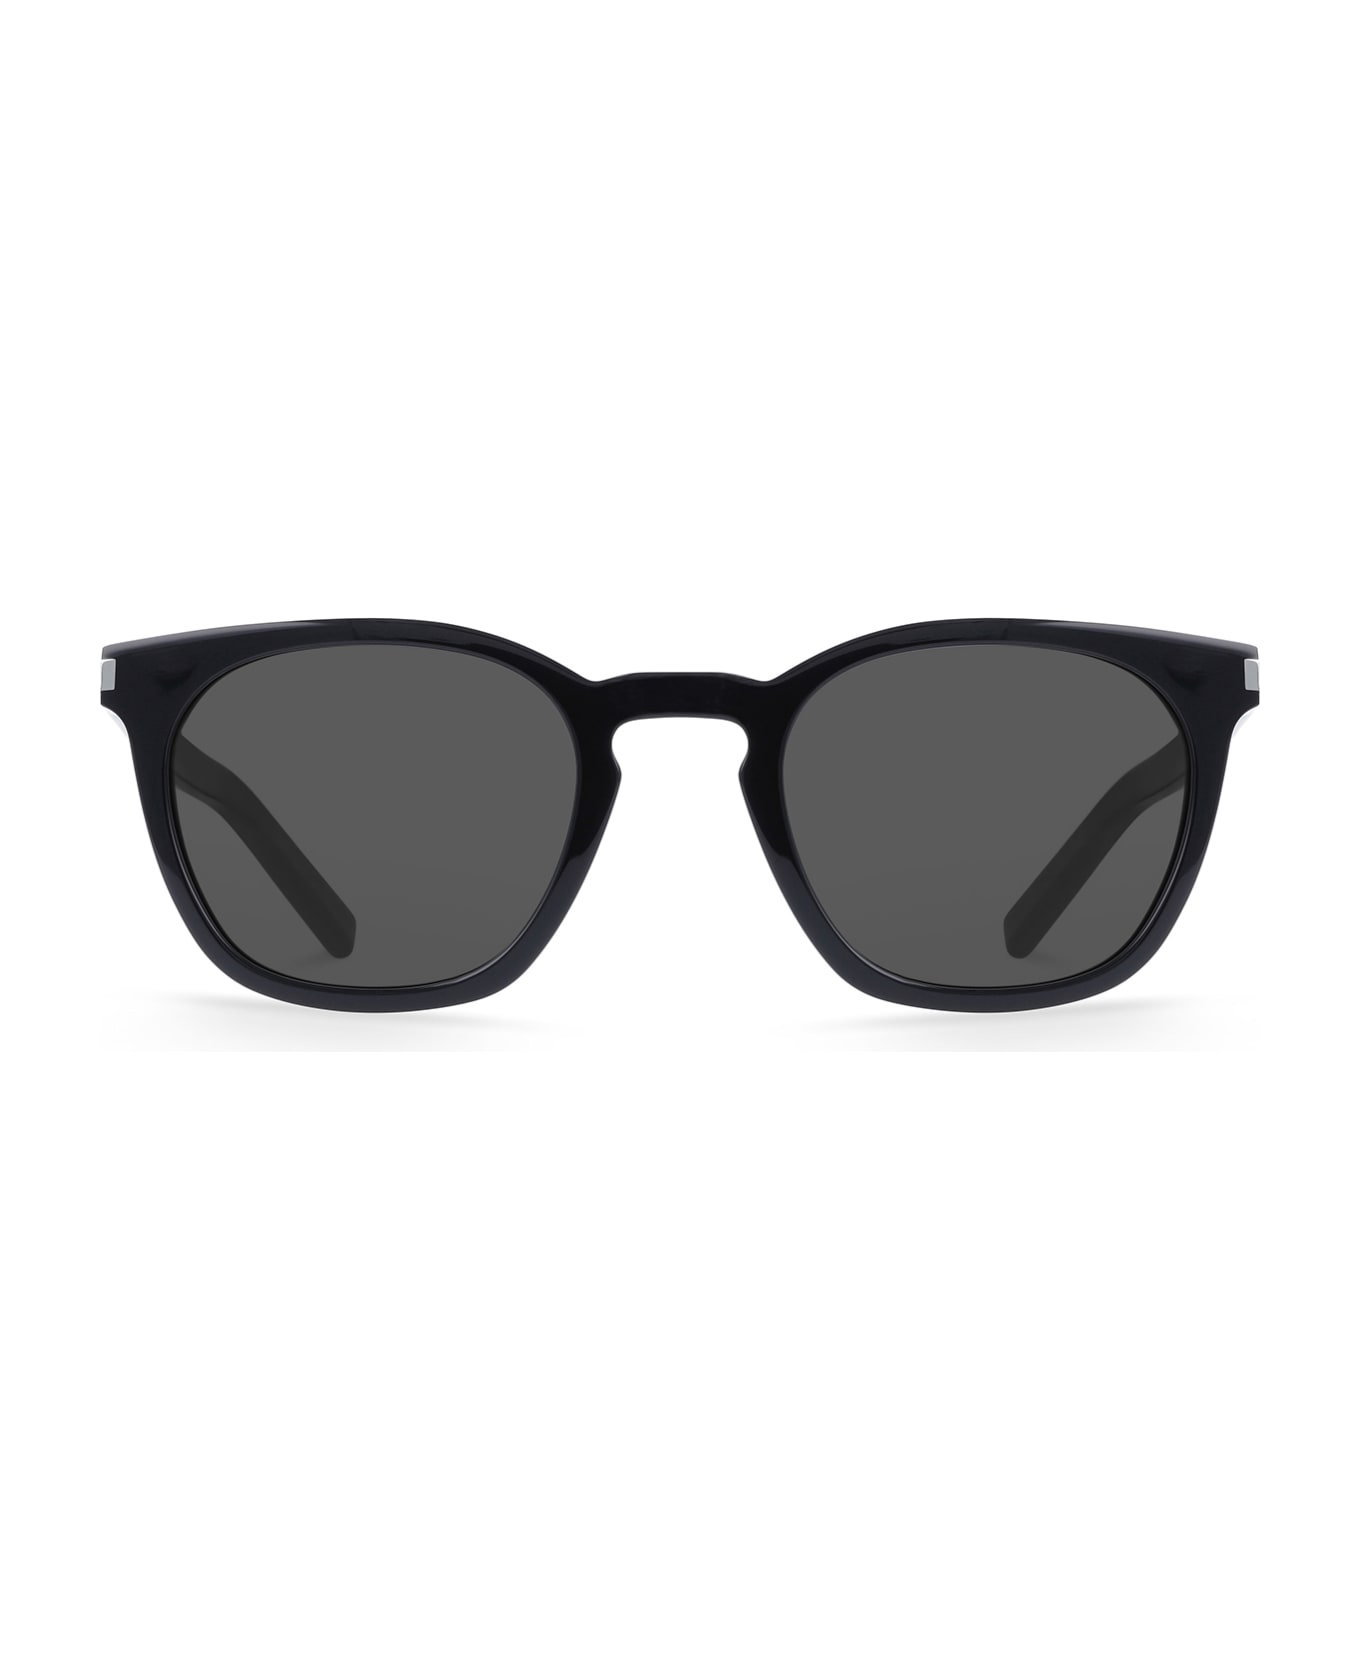 Saint Laurent Eyewear Sl 28 Black Sunglasses - Black サングラス